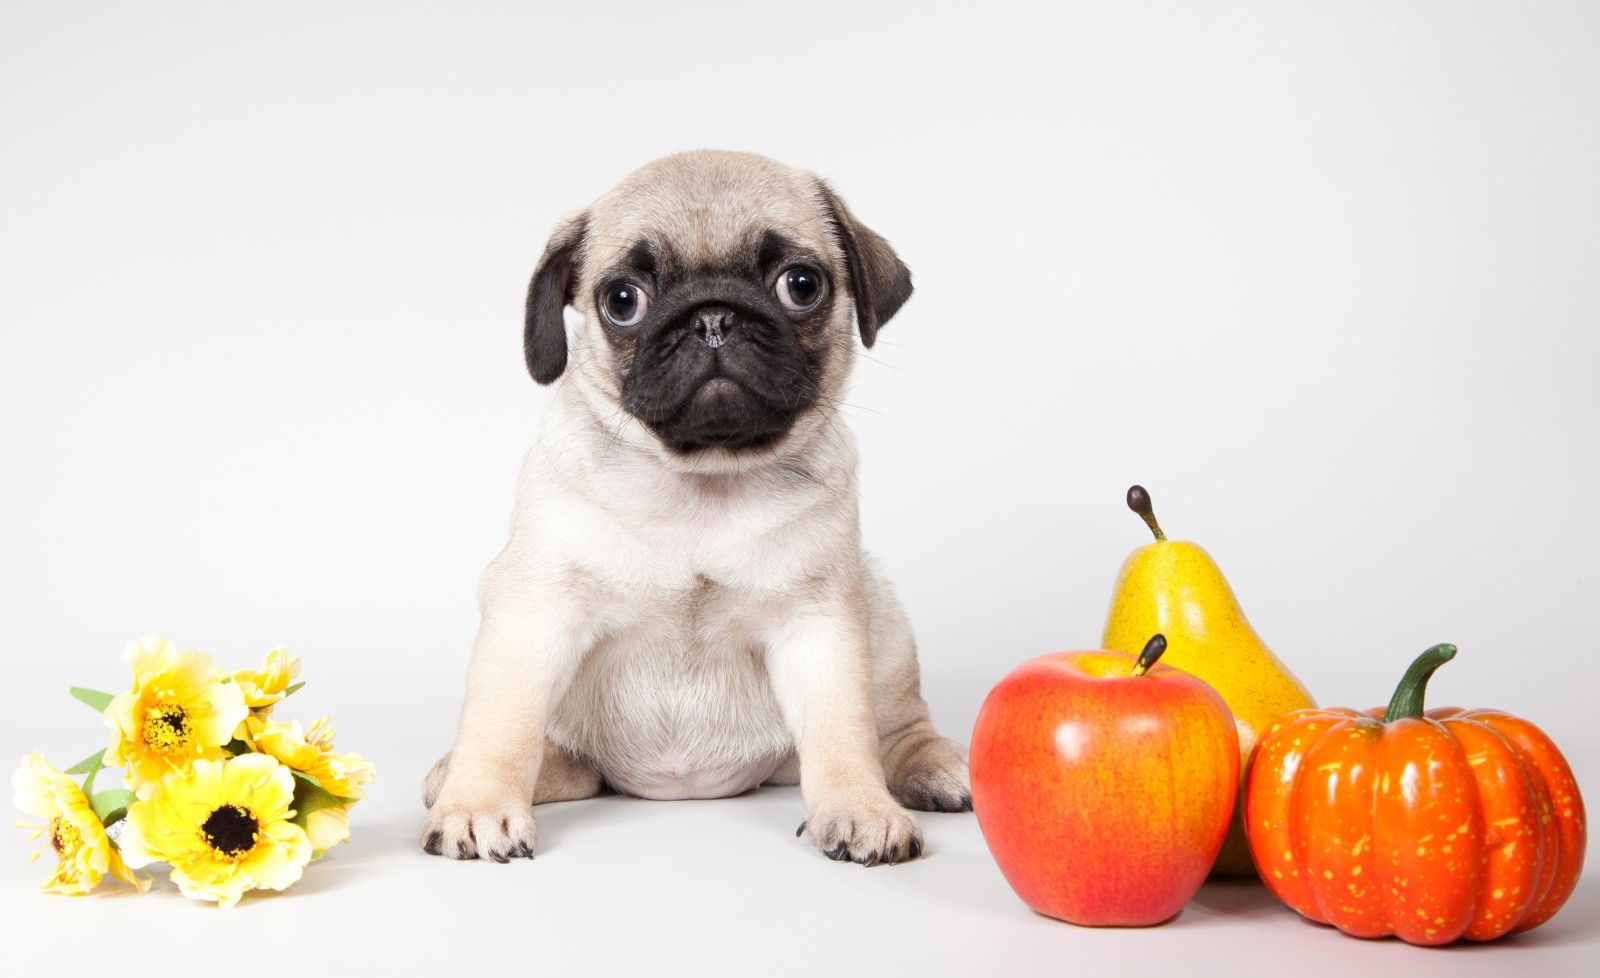 ลูกสุนัข, ดอกไม้, หมาจู, ฟักทอง, แอปเปิ้ล, ลูกแพร์